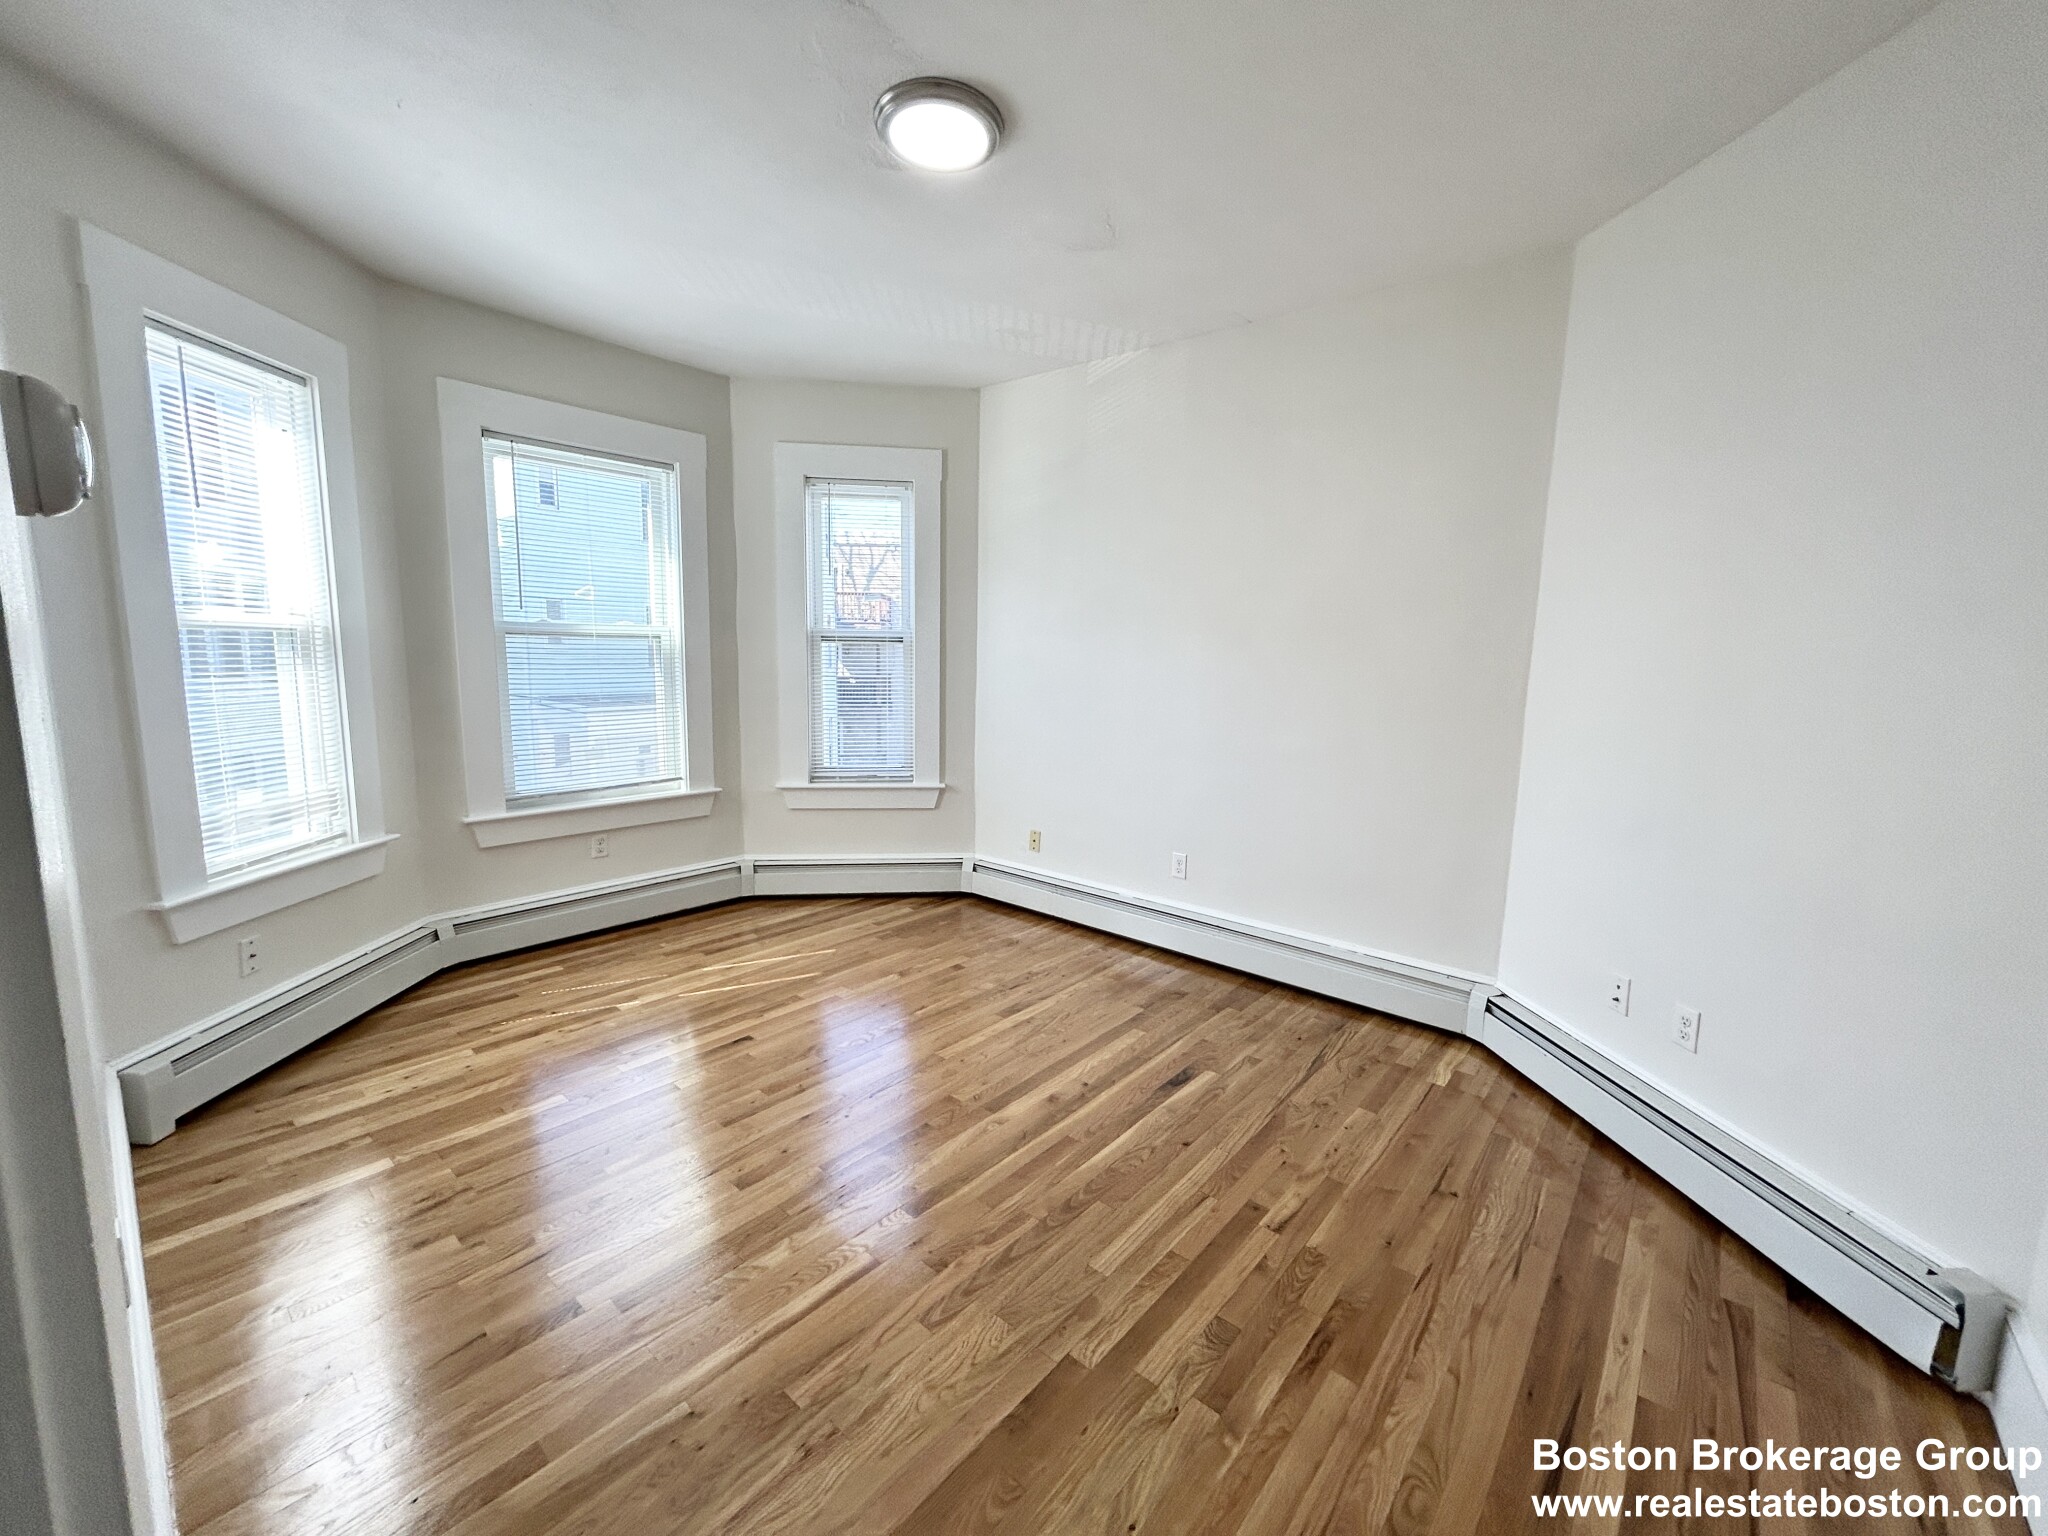 Photos of apartment on Elder St.,Boston MA 02125